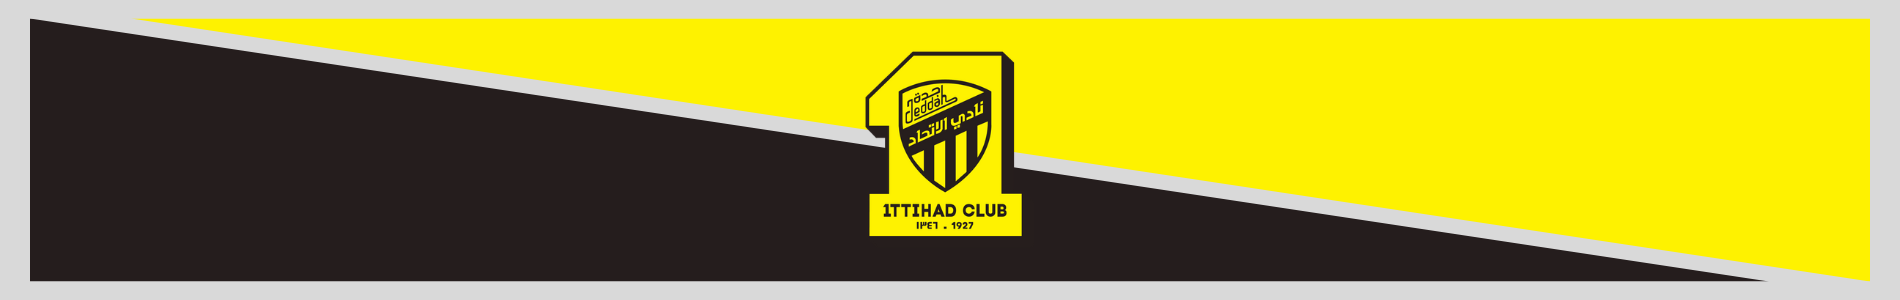 banner maillot de foot al ittihad